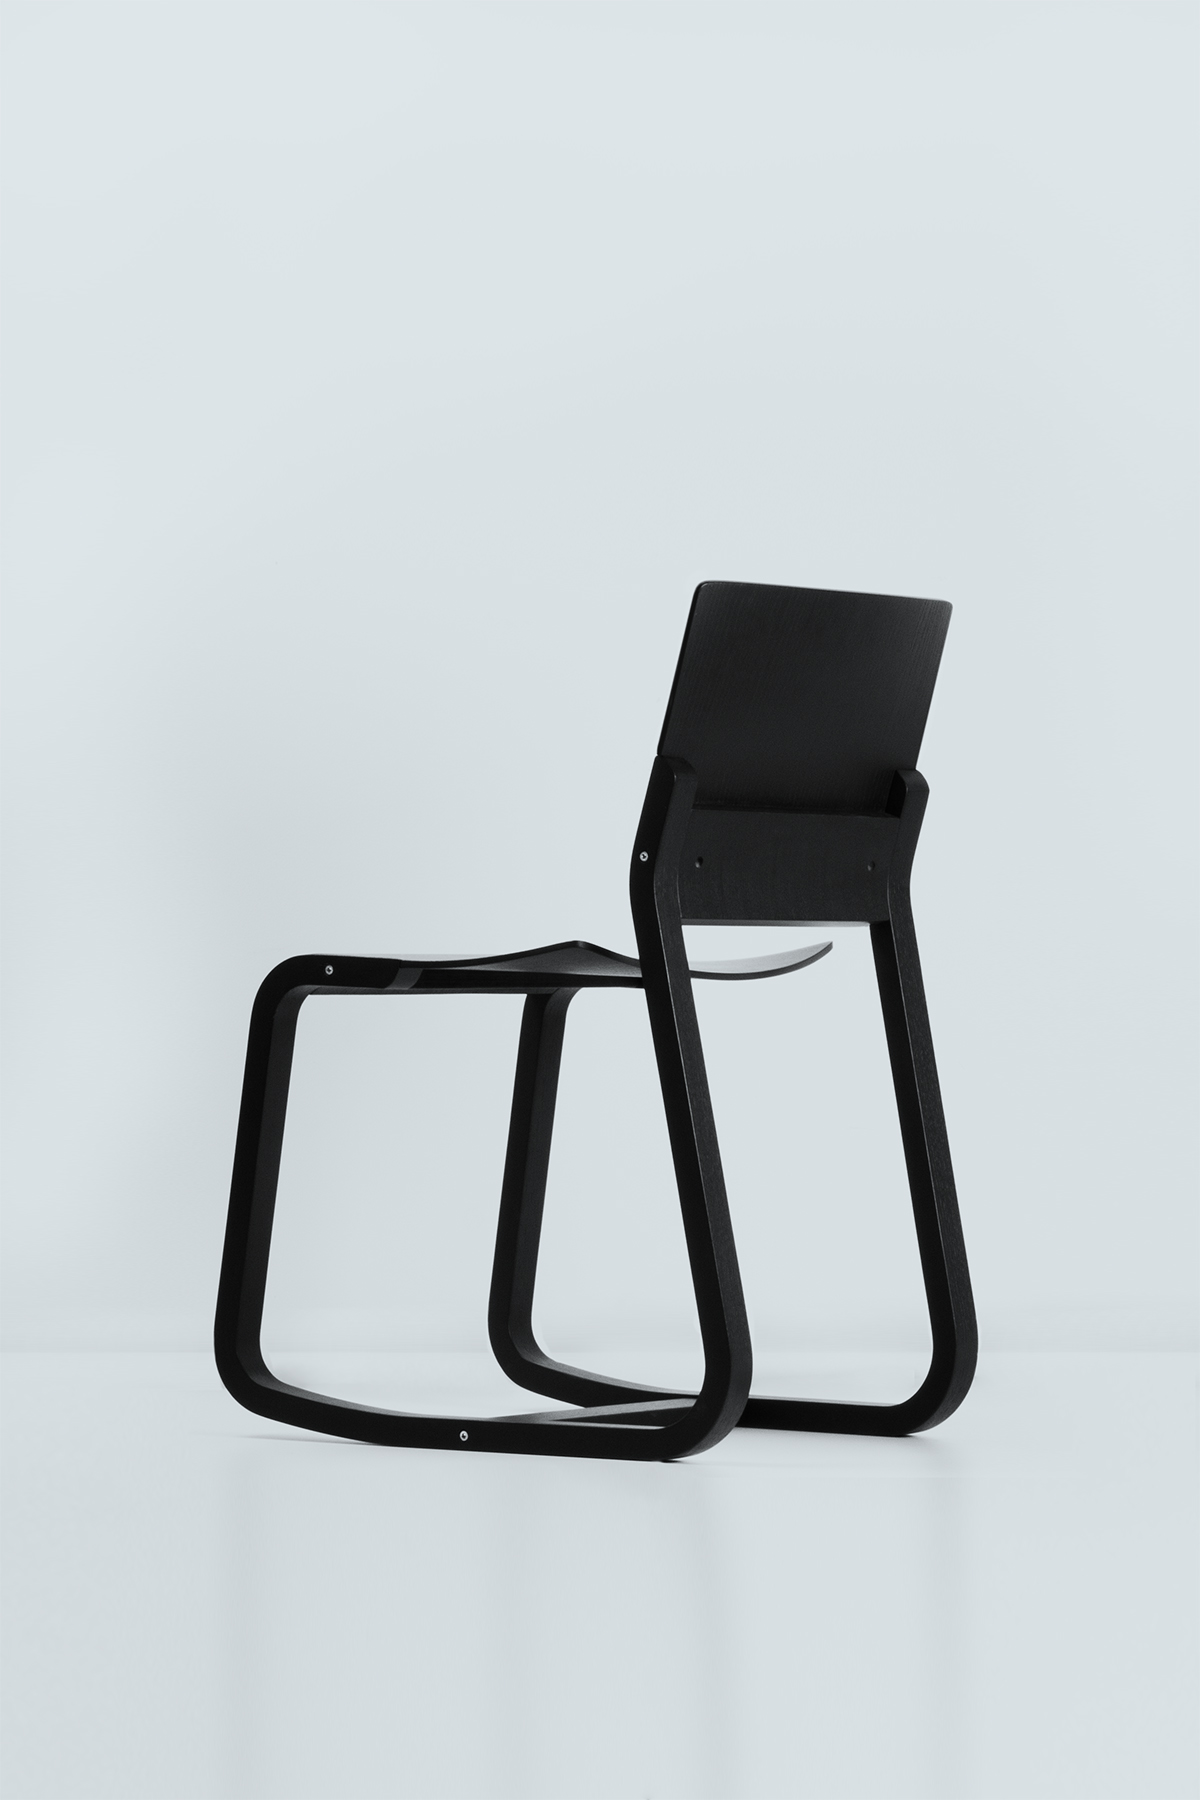 Loid Chair by Geckeler Michels